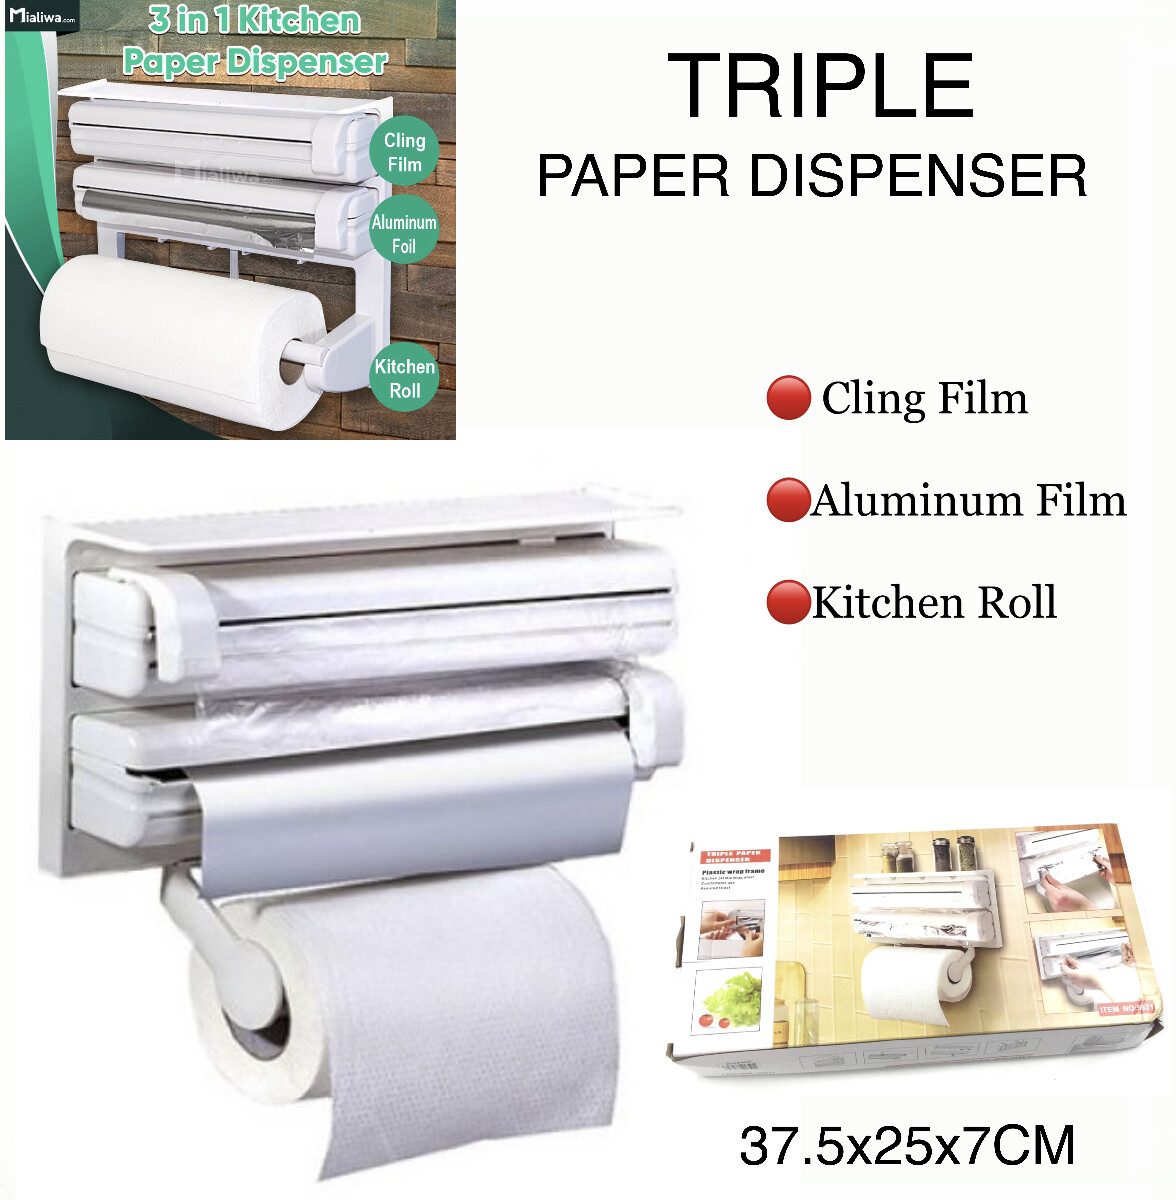 Triple Paper Dispenser